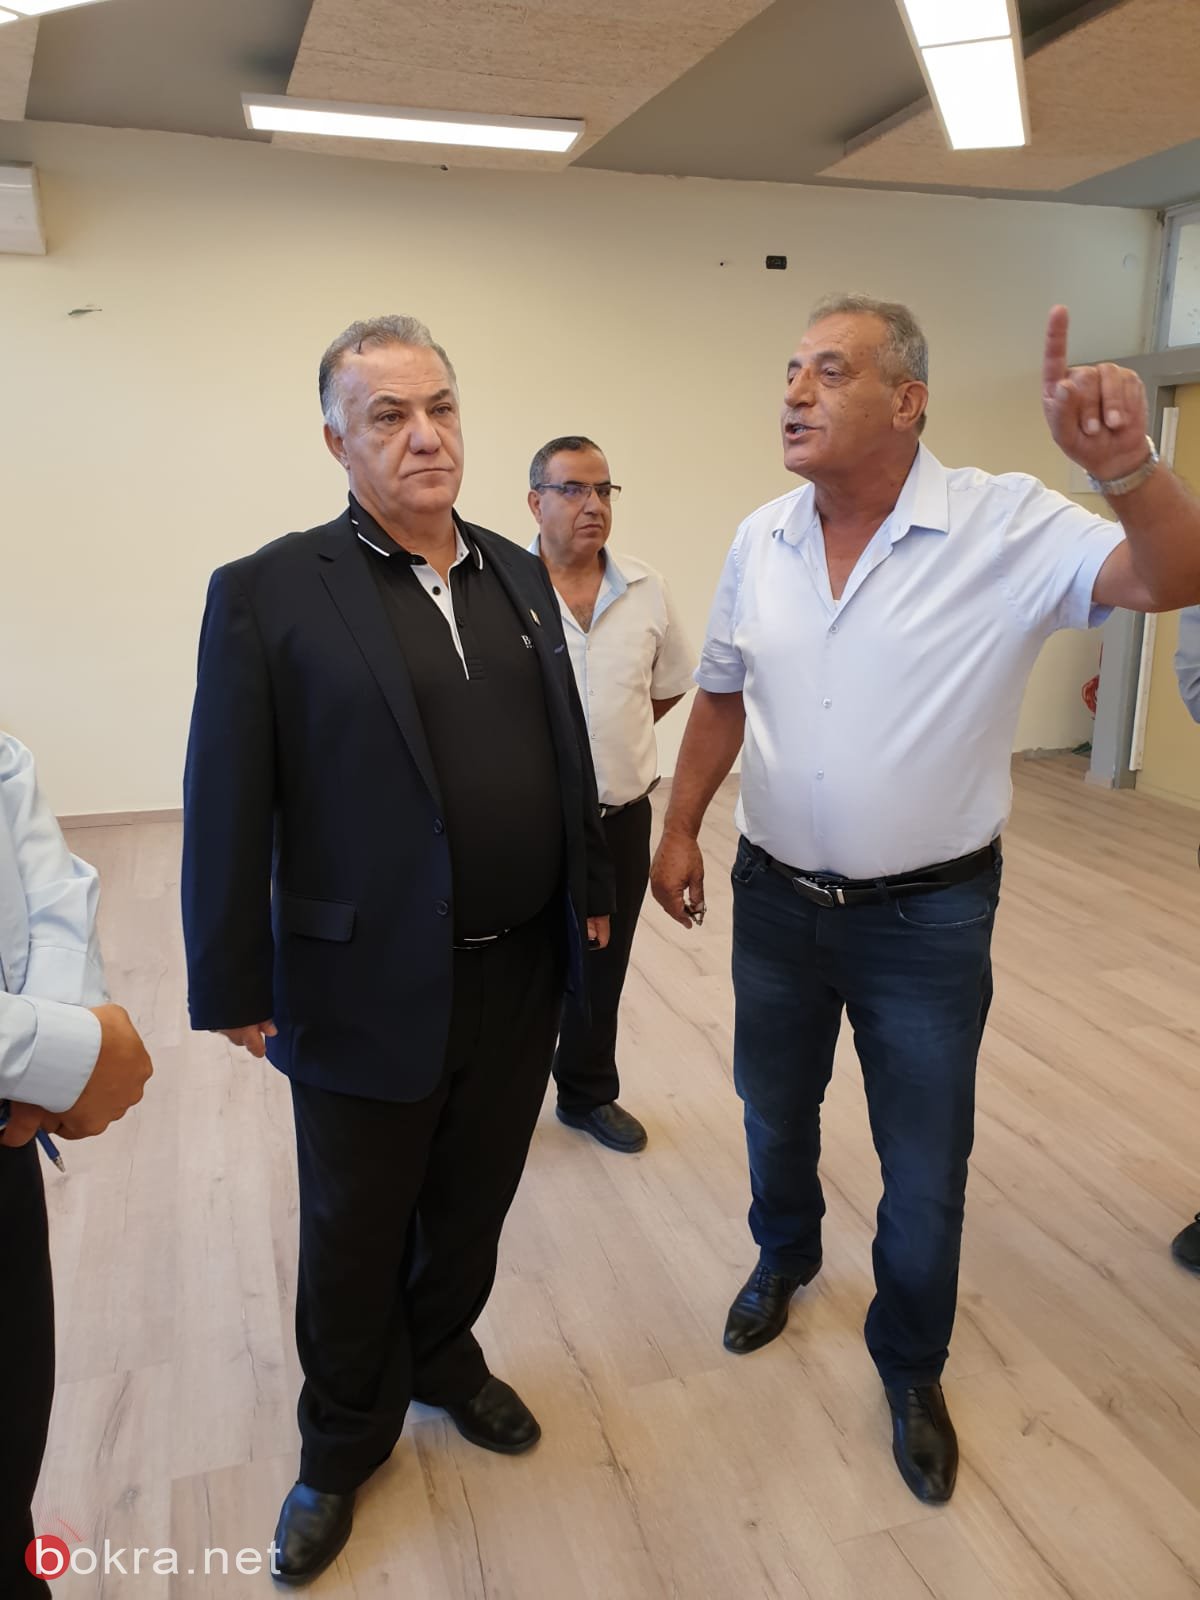 لليوم الثاني على التوالي رئيس بلدية الناصرة  وادارتها في جوله تفقدية-18